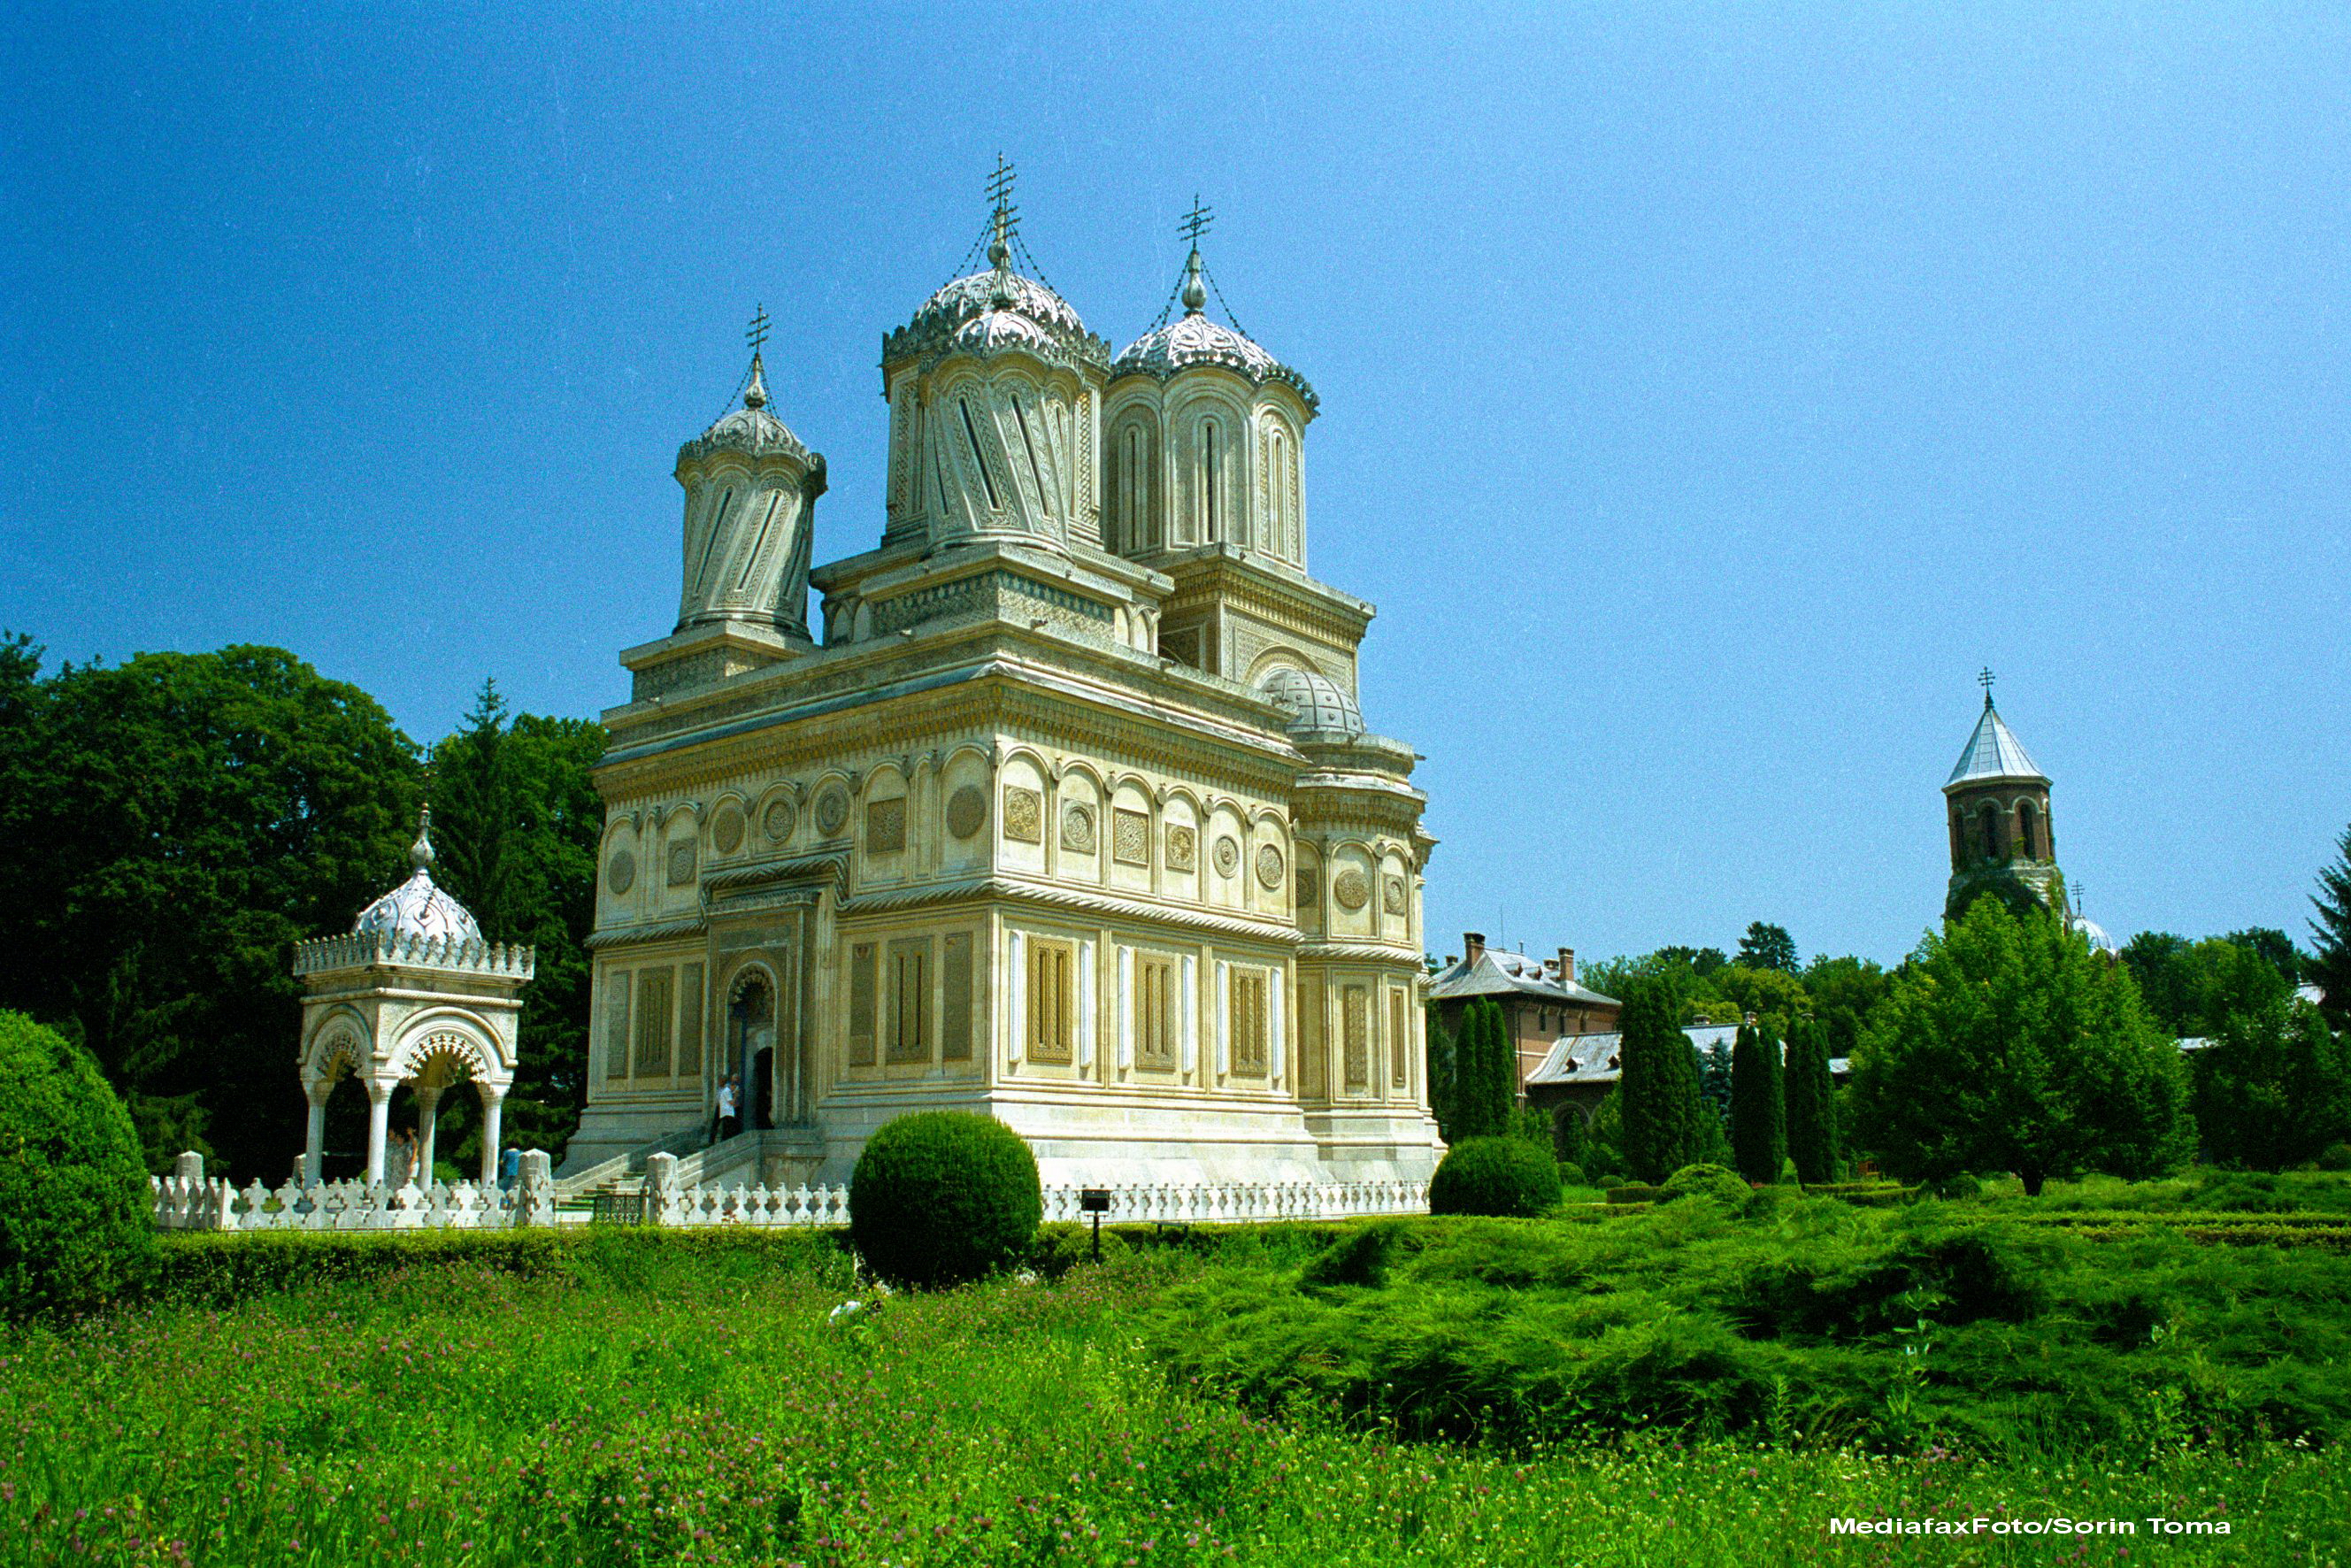 Turist in Romania. Locul in care legendele se imbina cu povestirile adevarate despre voievozi: Curtea de Arges